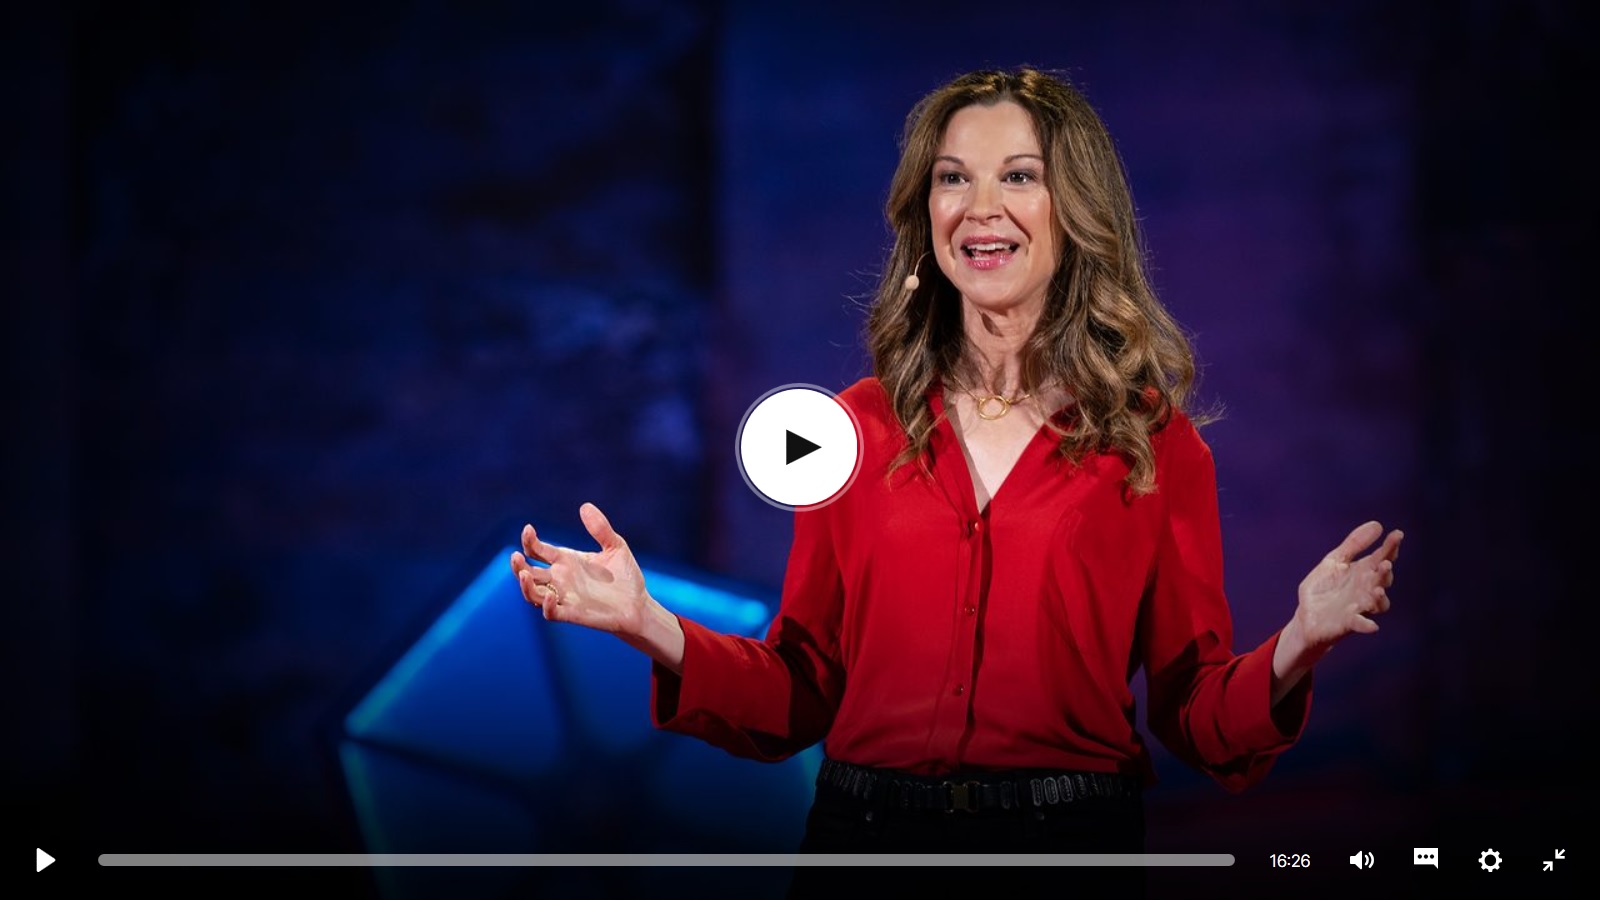 Bekijk de TED Talk  van Lori Gottlieb. Ze geeft voorbeelden van verhalen die mensen haar vertellen en hoe ze die helpt herschrijven.